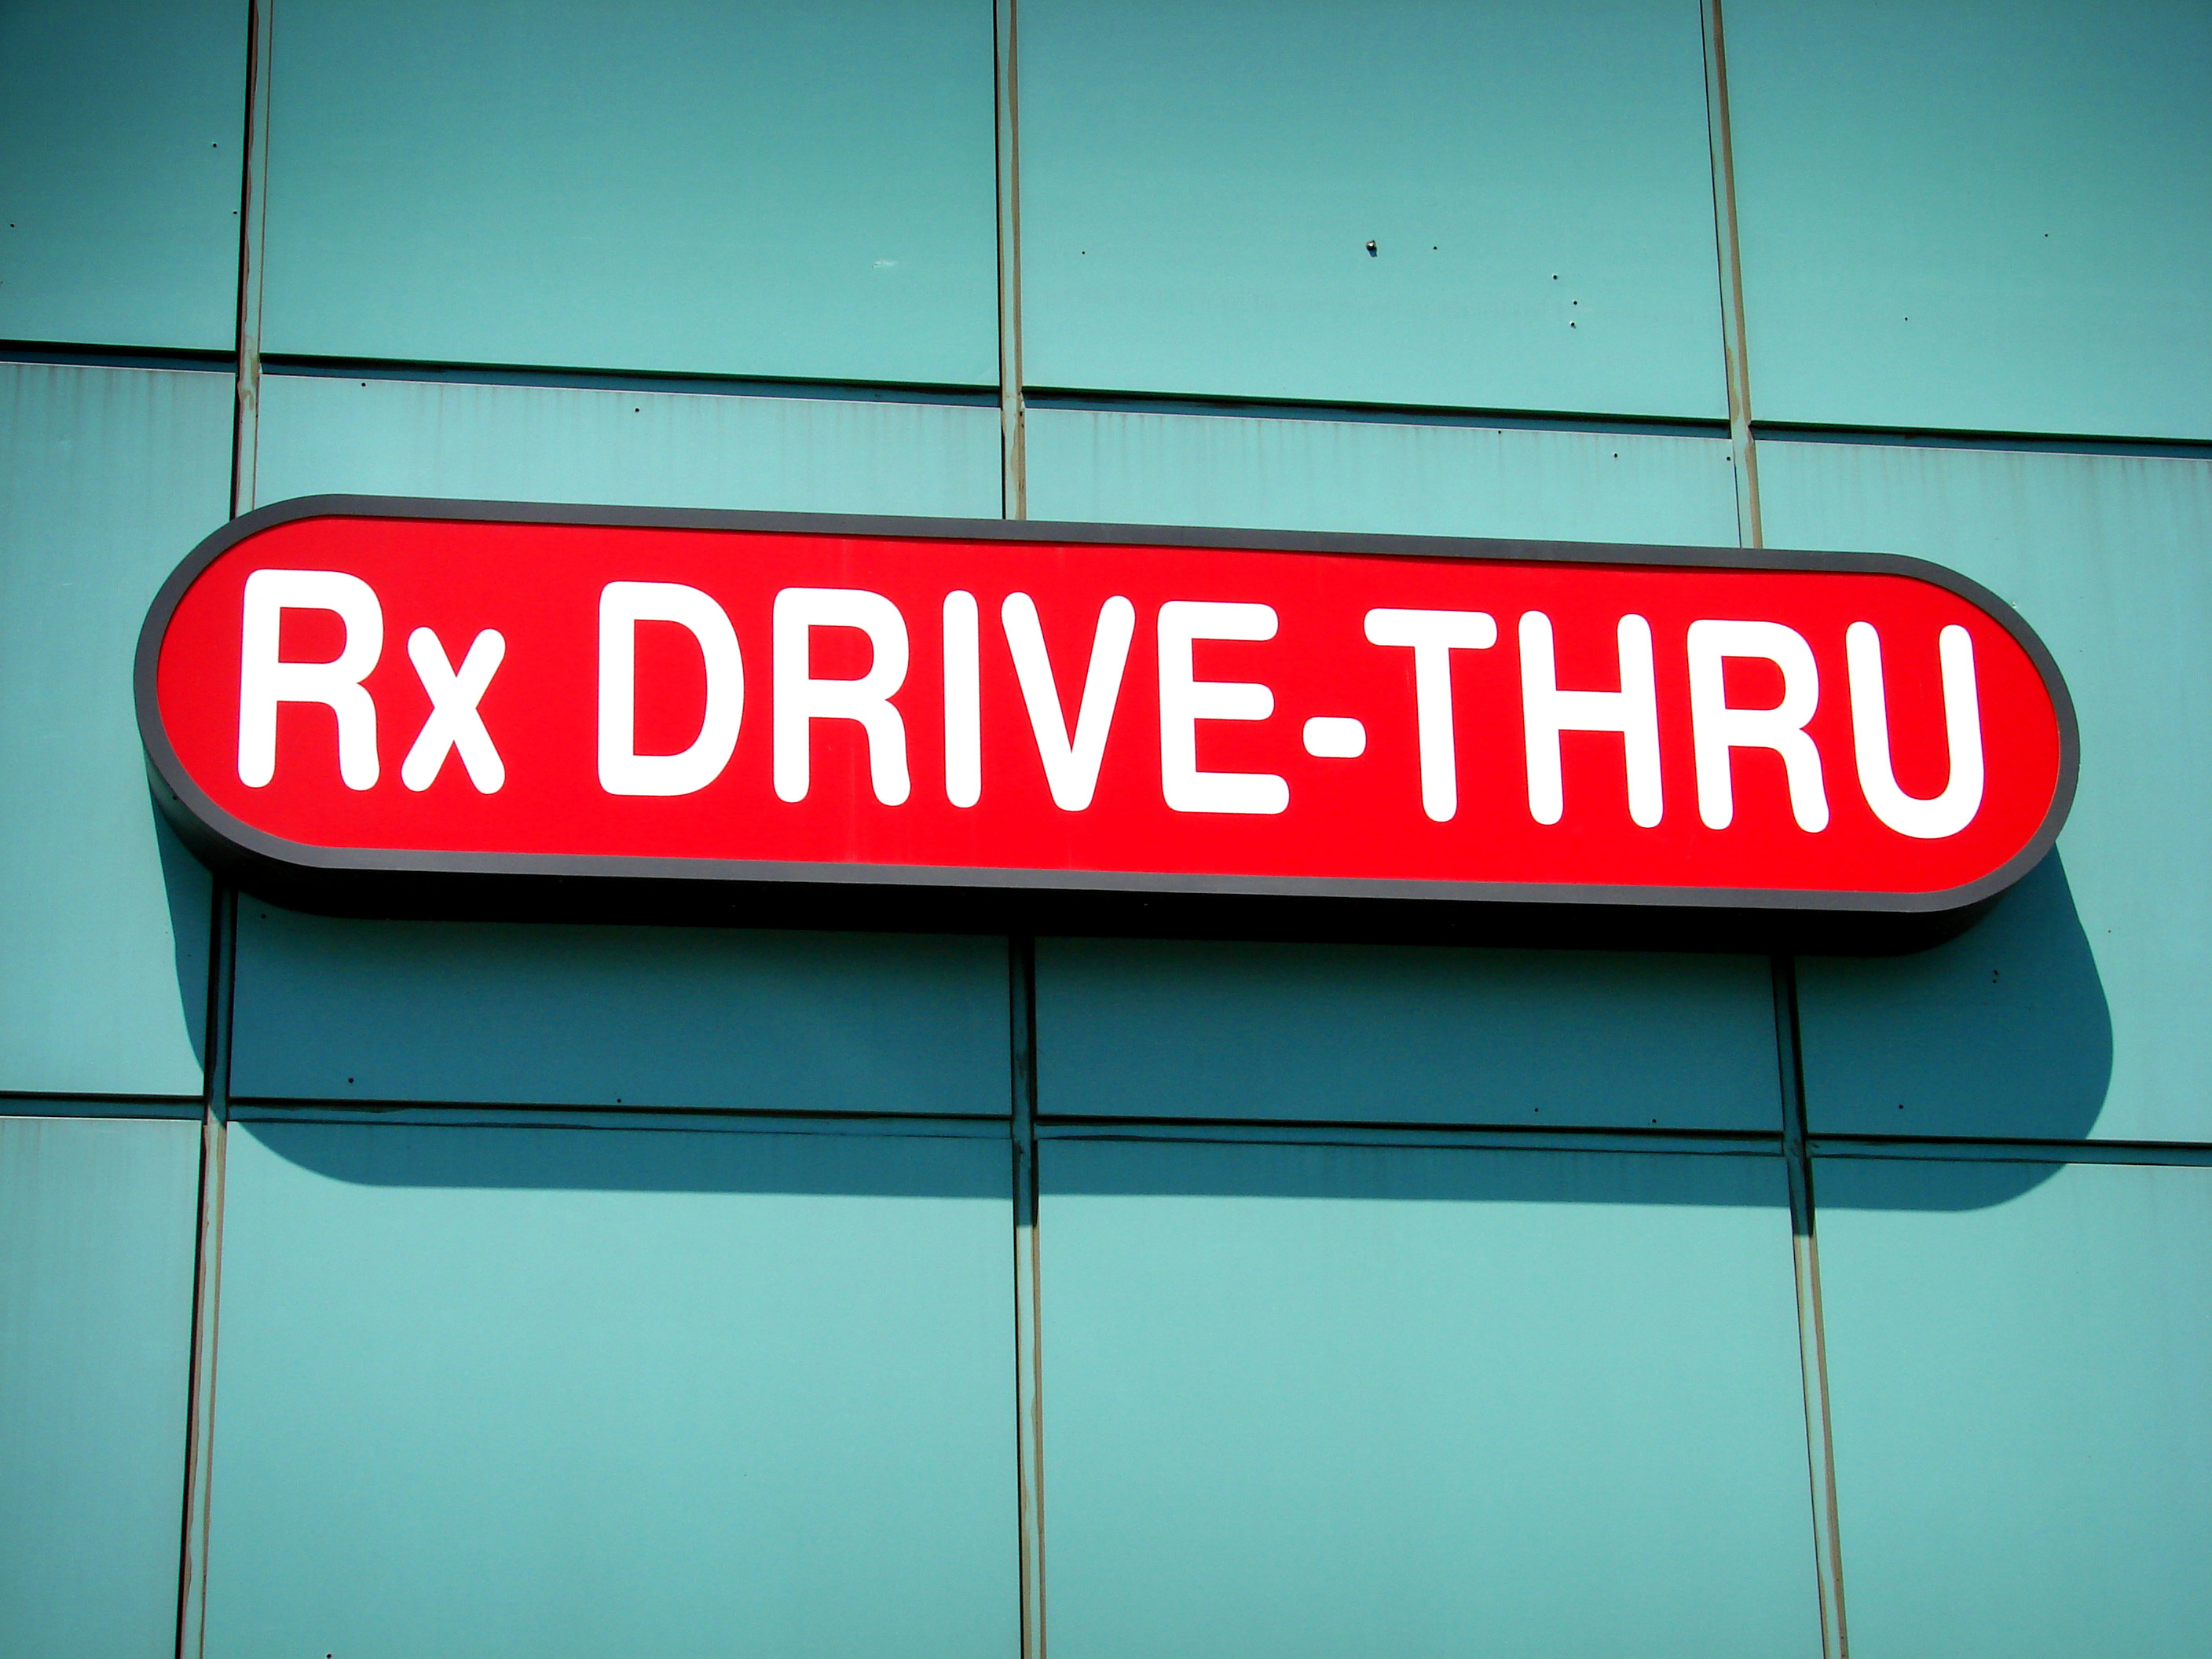 &quot;Rx Drive-thru&quot; sign